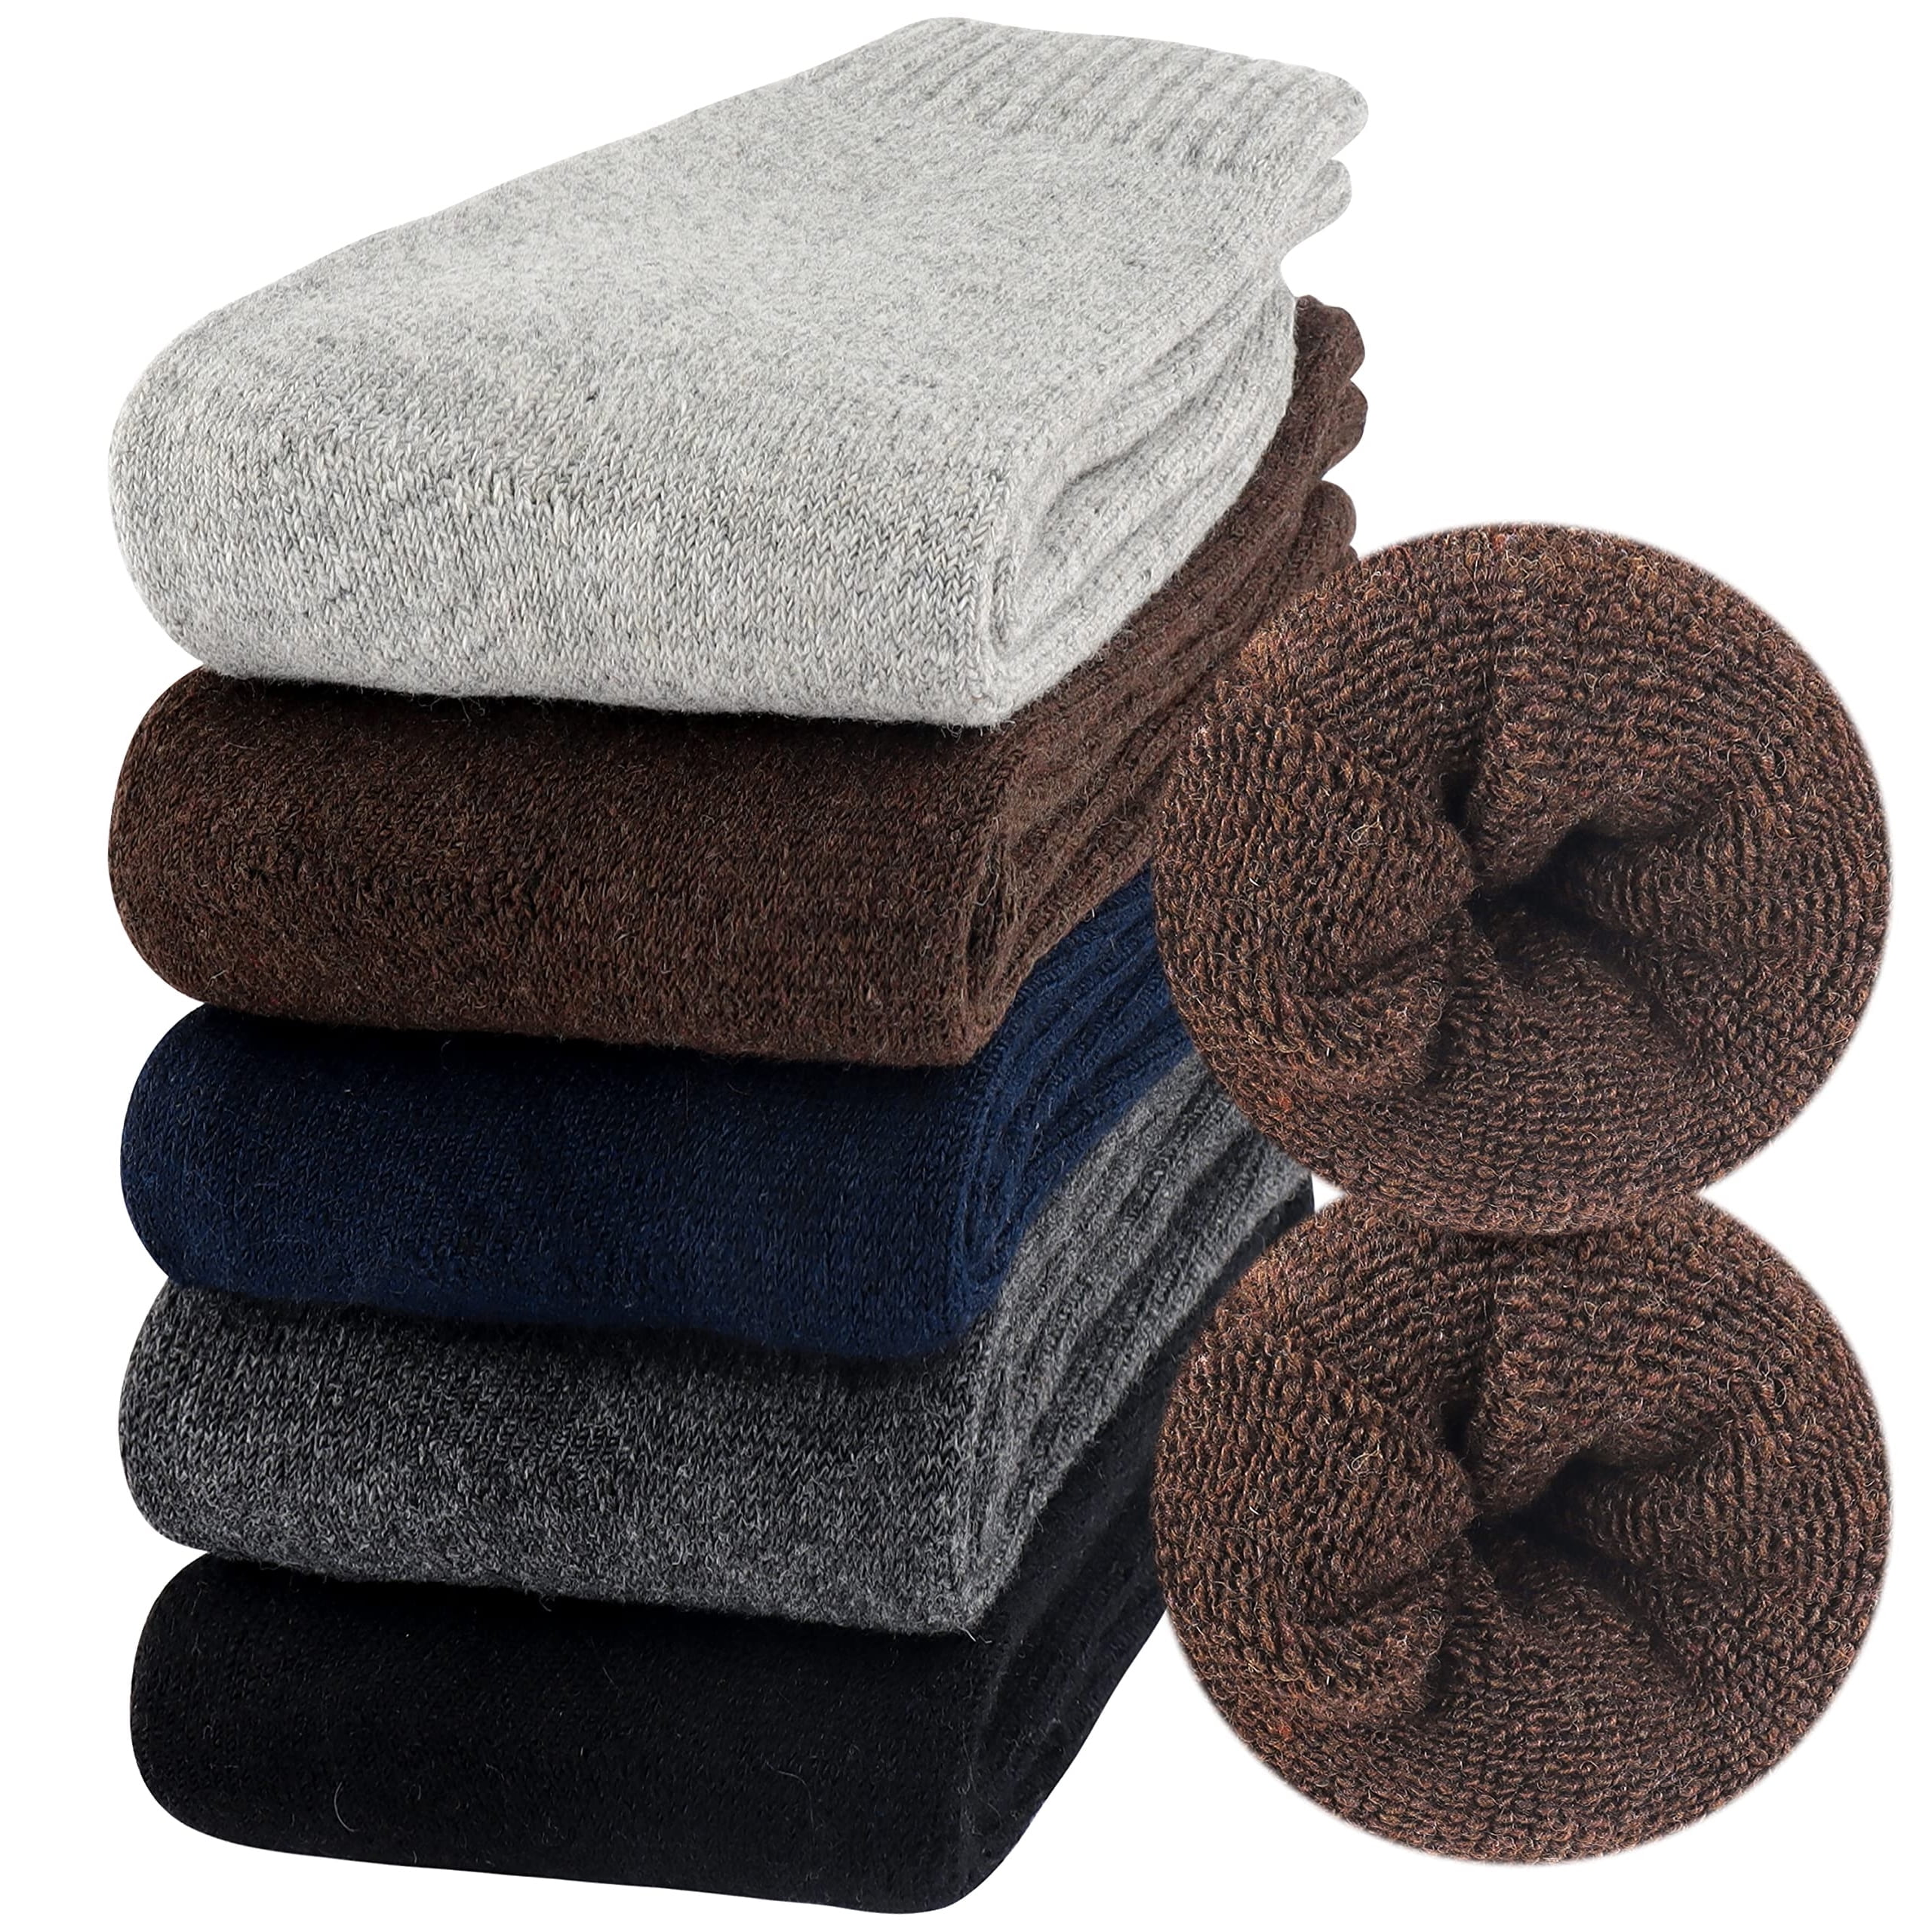 Moyel Wool Socks Mens Warm Socks 7-13 Winter Thermal Socks for Men Men ...